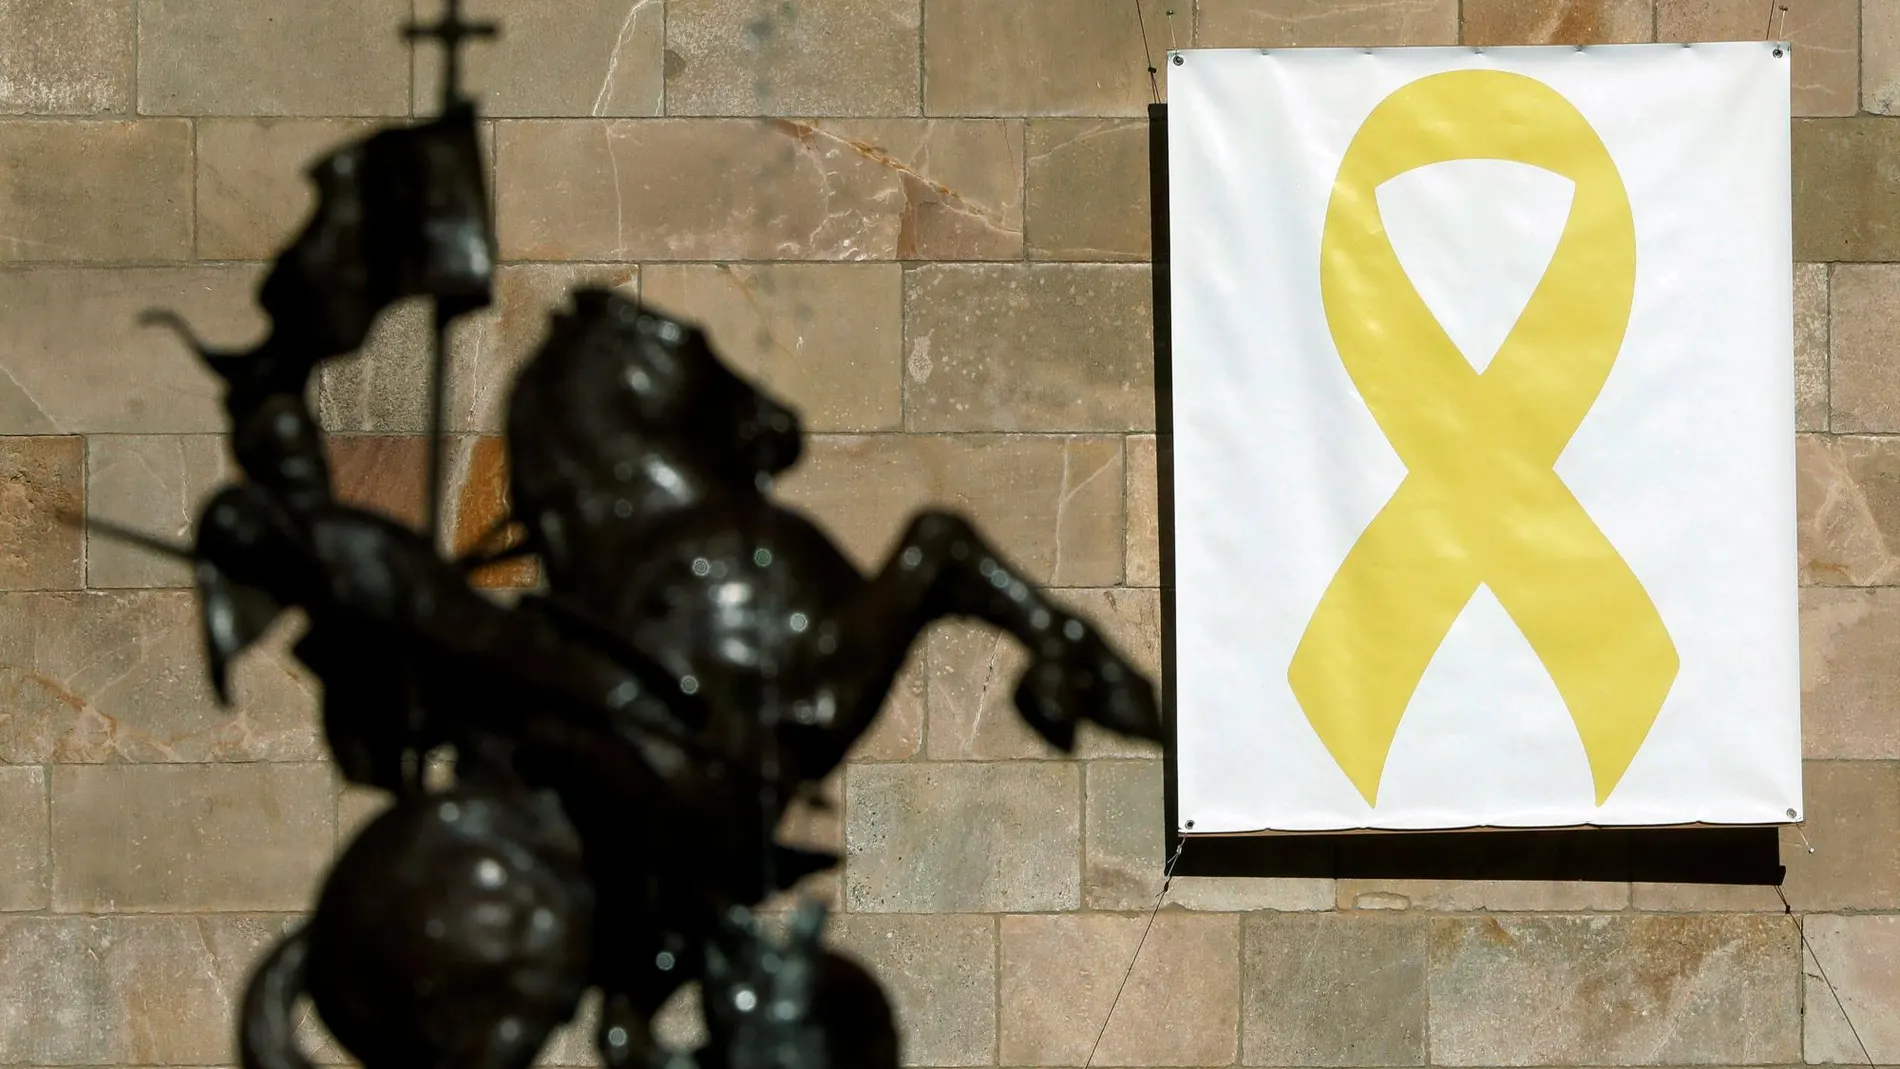 Vista del lazo amarillo colocado en el Pati dels Tarongers del Palau de la Generalitat